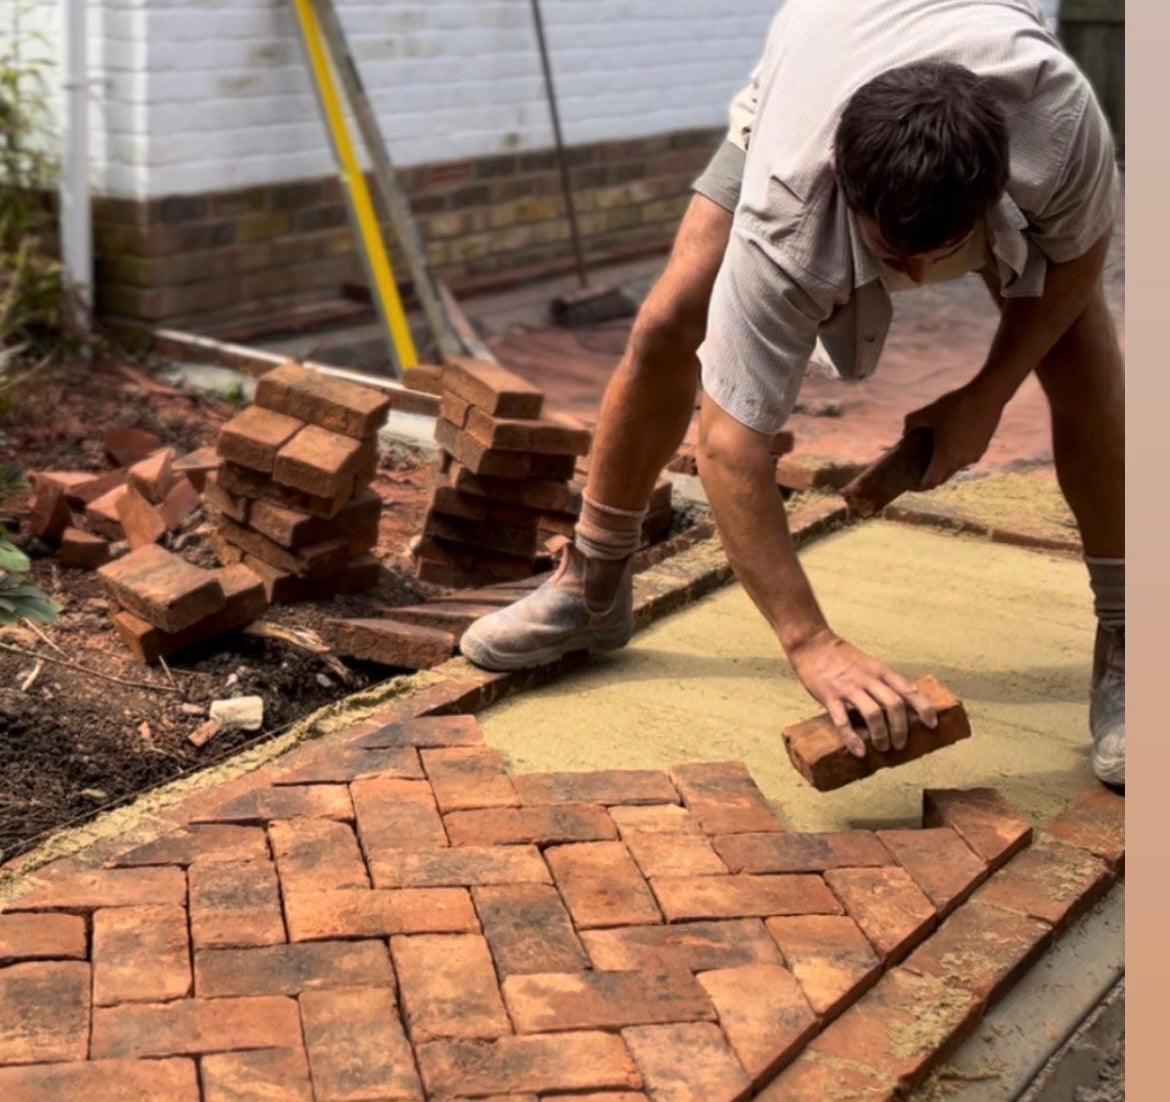 Handmade Clay Paving Brick - Type 2 - Reclaimed Brick Company